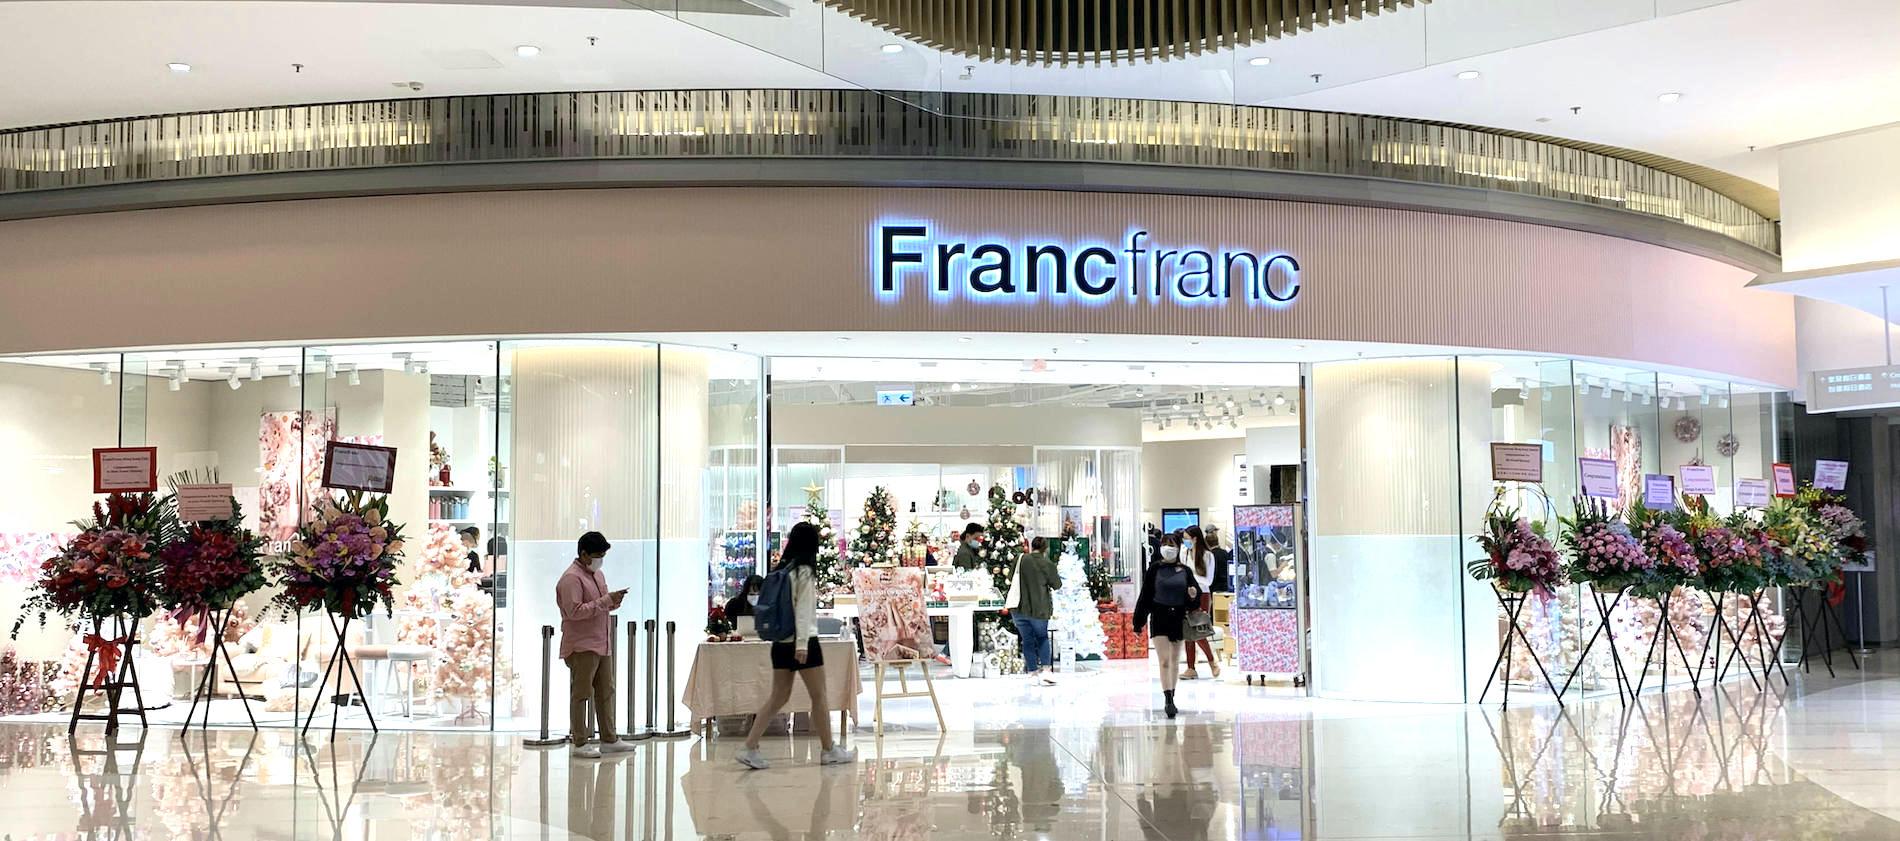 Tis the Season for Pink at Francfranc's New Store in Tseung Kwan O